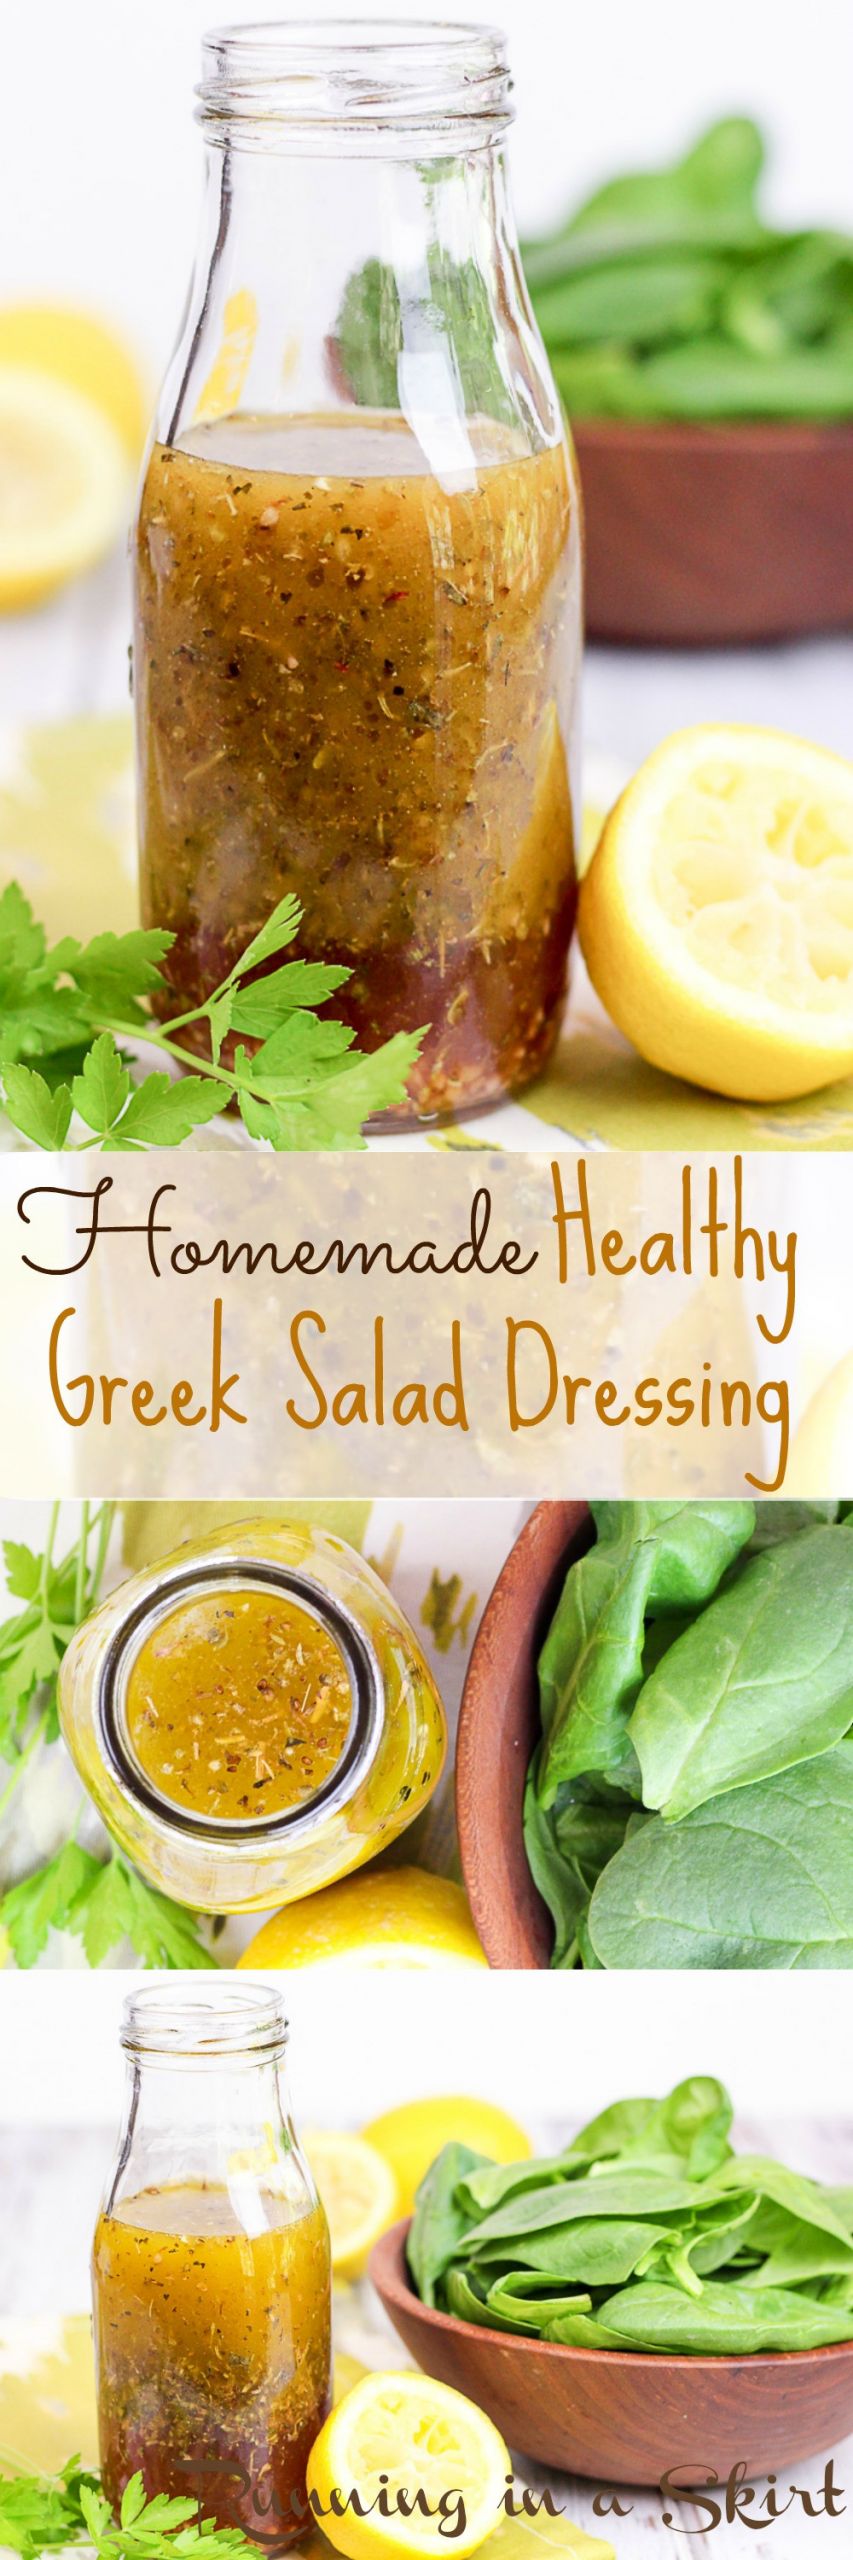 Simple Salad Dressings Recipes
 7 Ingre nt Healthy Greek Salad Dressing